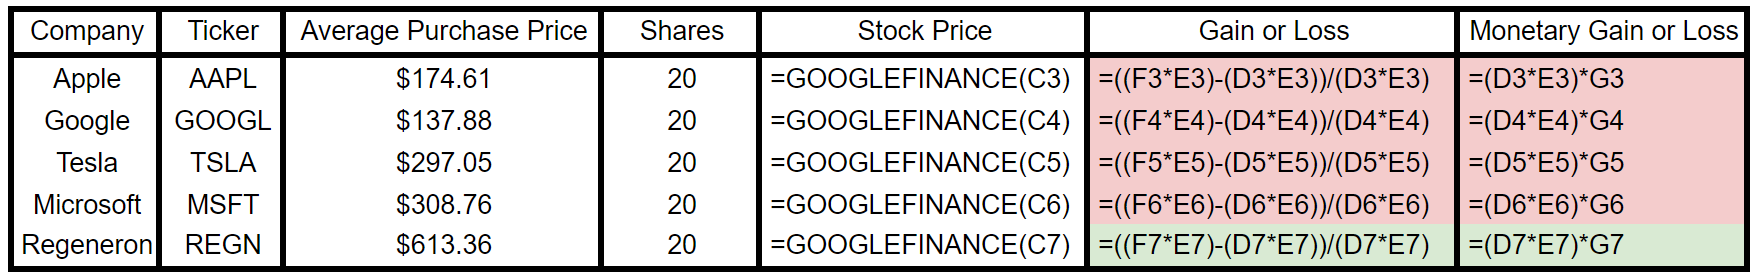 Google sheets gains and losses formula